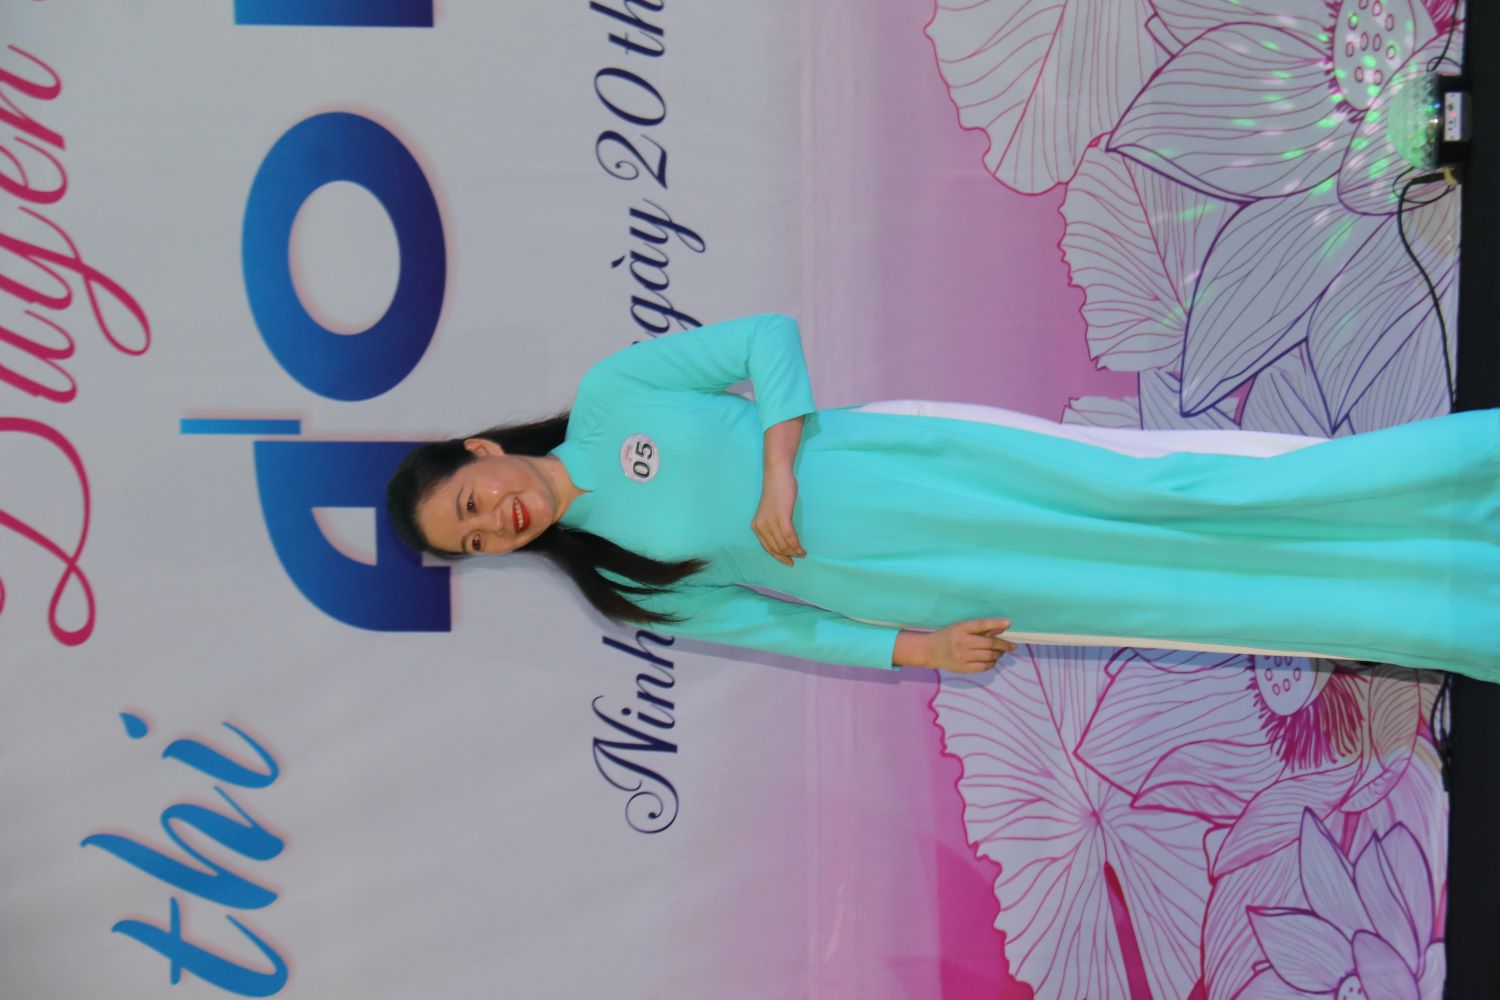 Rời bộ đồ nhân viên tạp vụ, lần đầu chị Nguyễn Thị Linh được trải nghiệm thể hiện mình thướt tha trong tà áo dài.Ảnh: Phương Linh